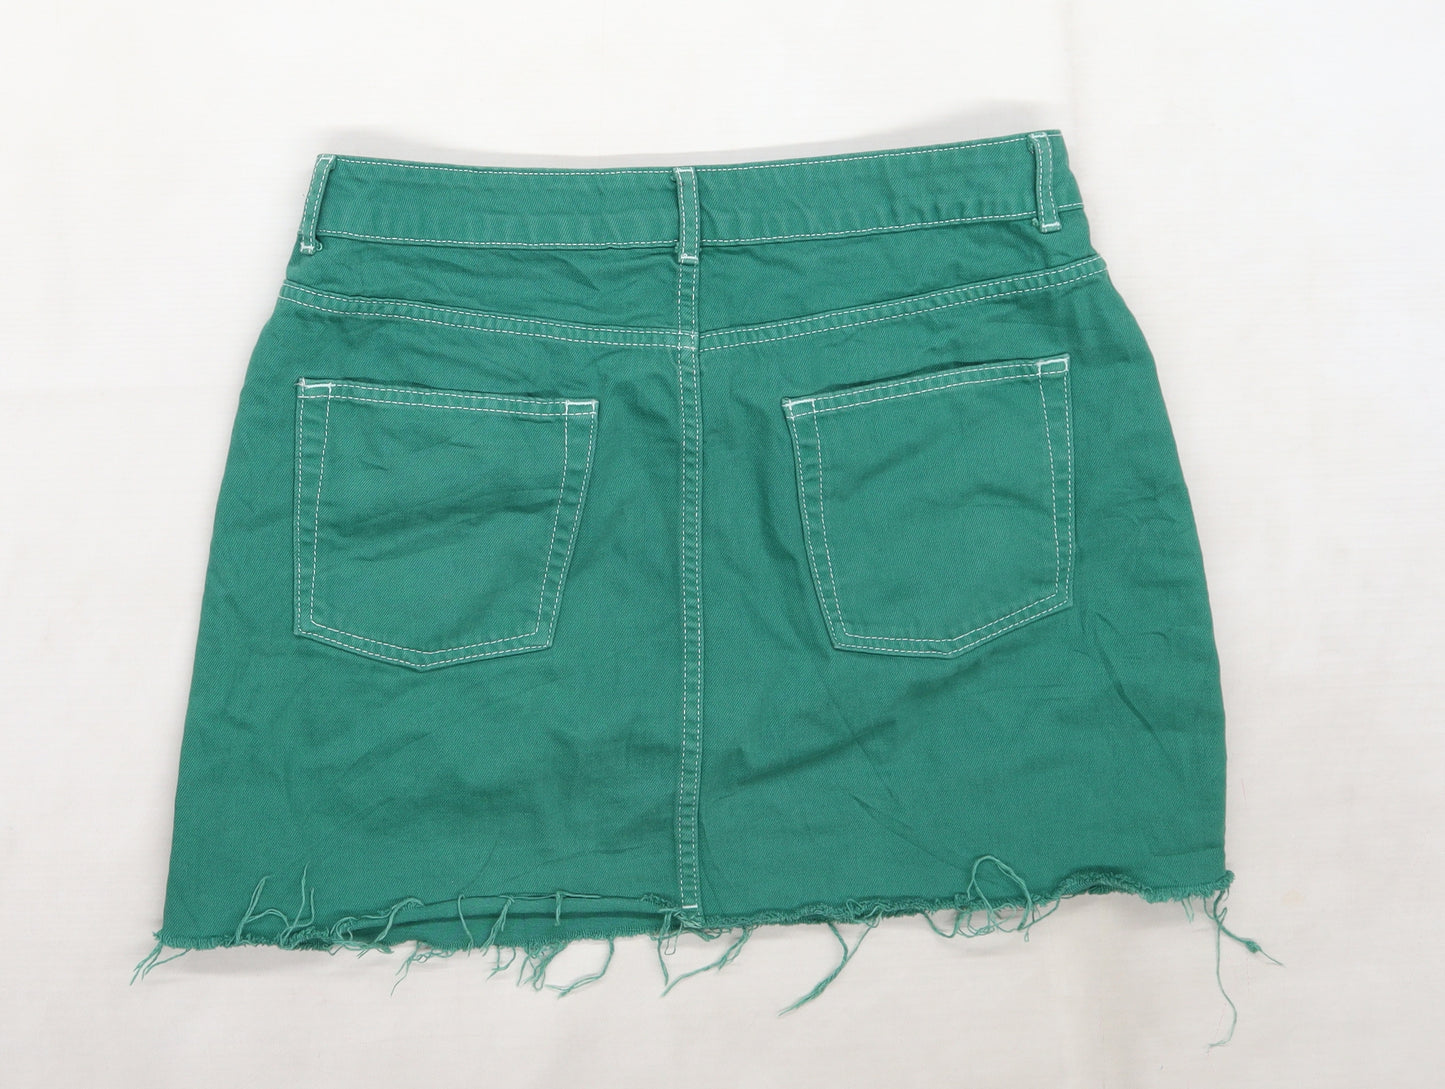 Topshop Womens Green  Denim Mini Skirt Size 14  - Distressed hem